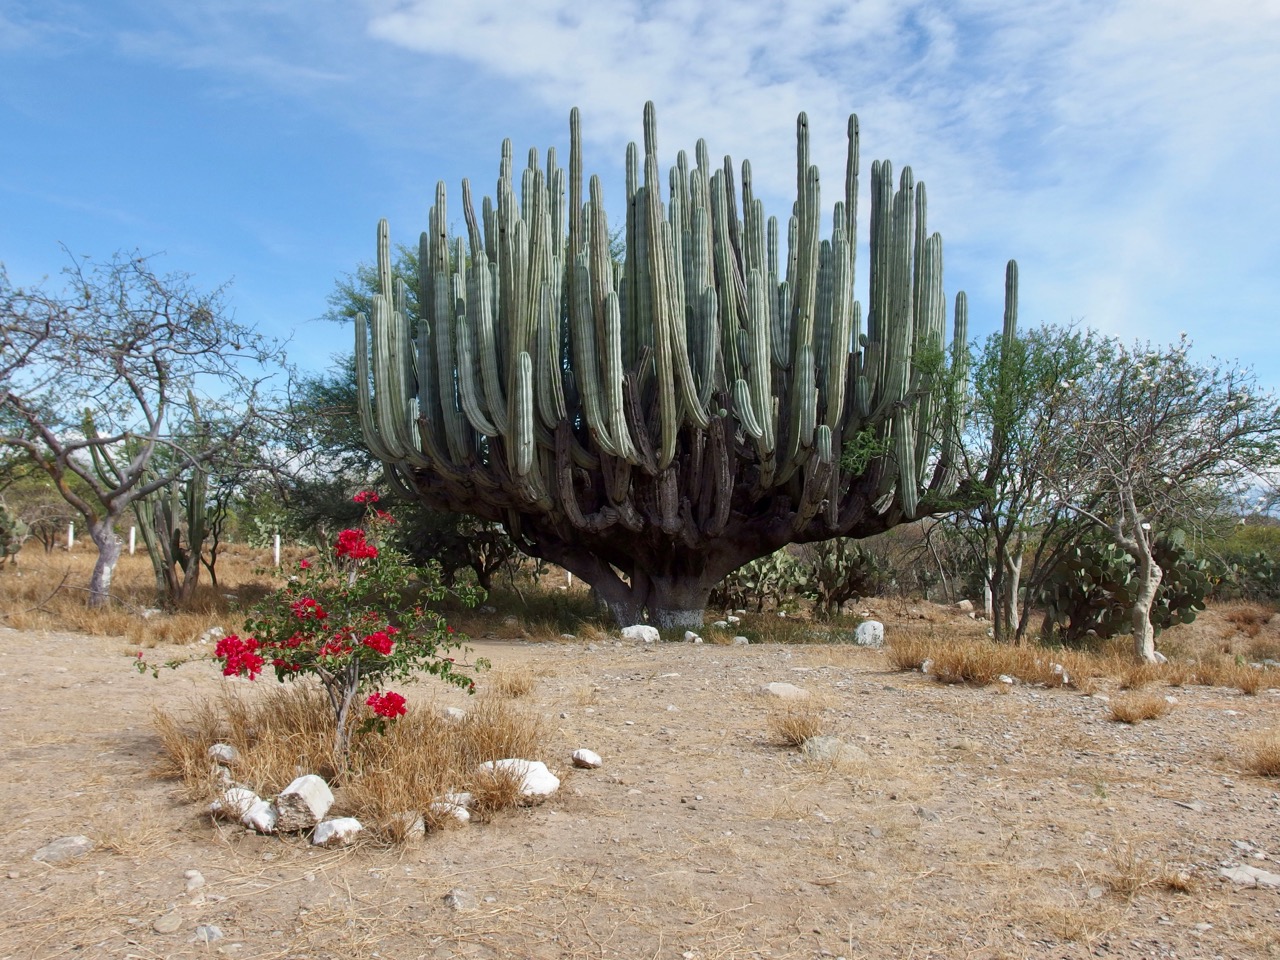 Cactus, Mexico